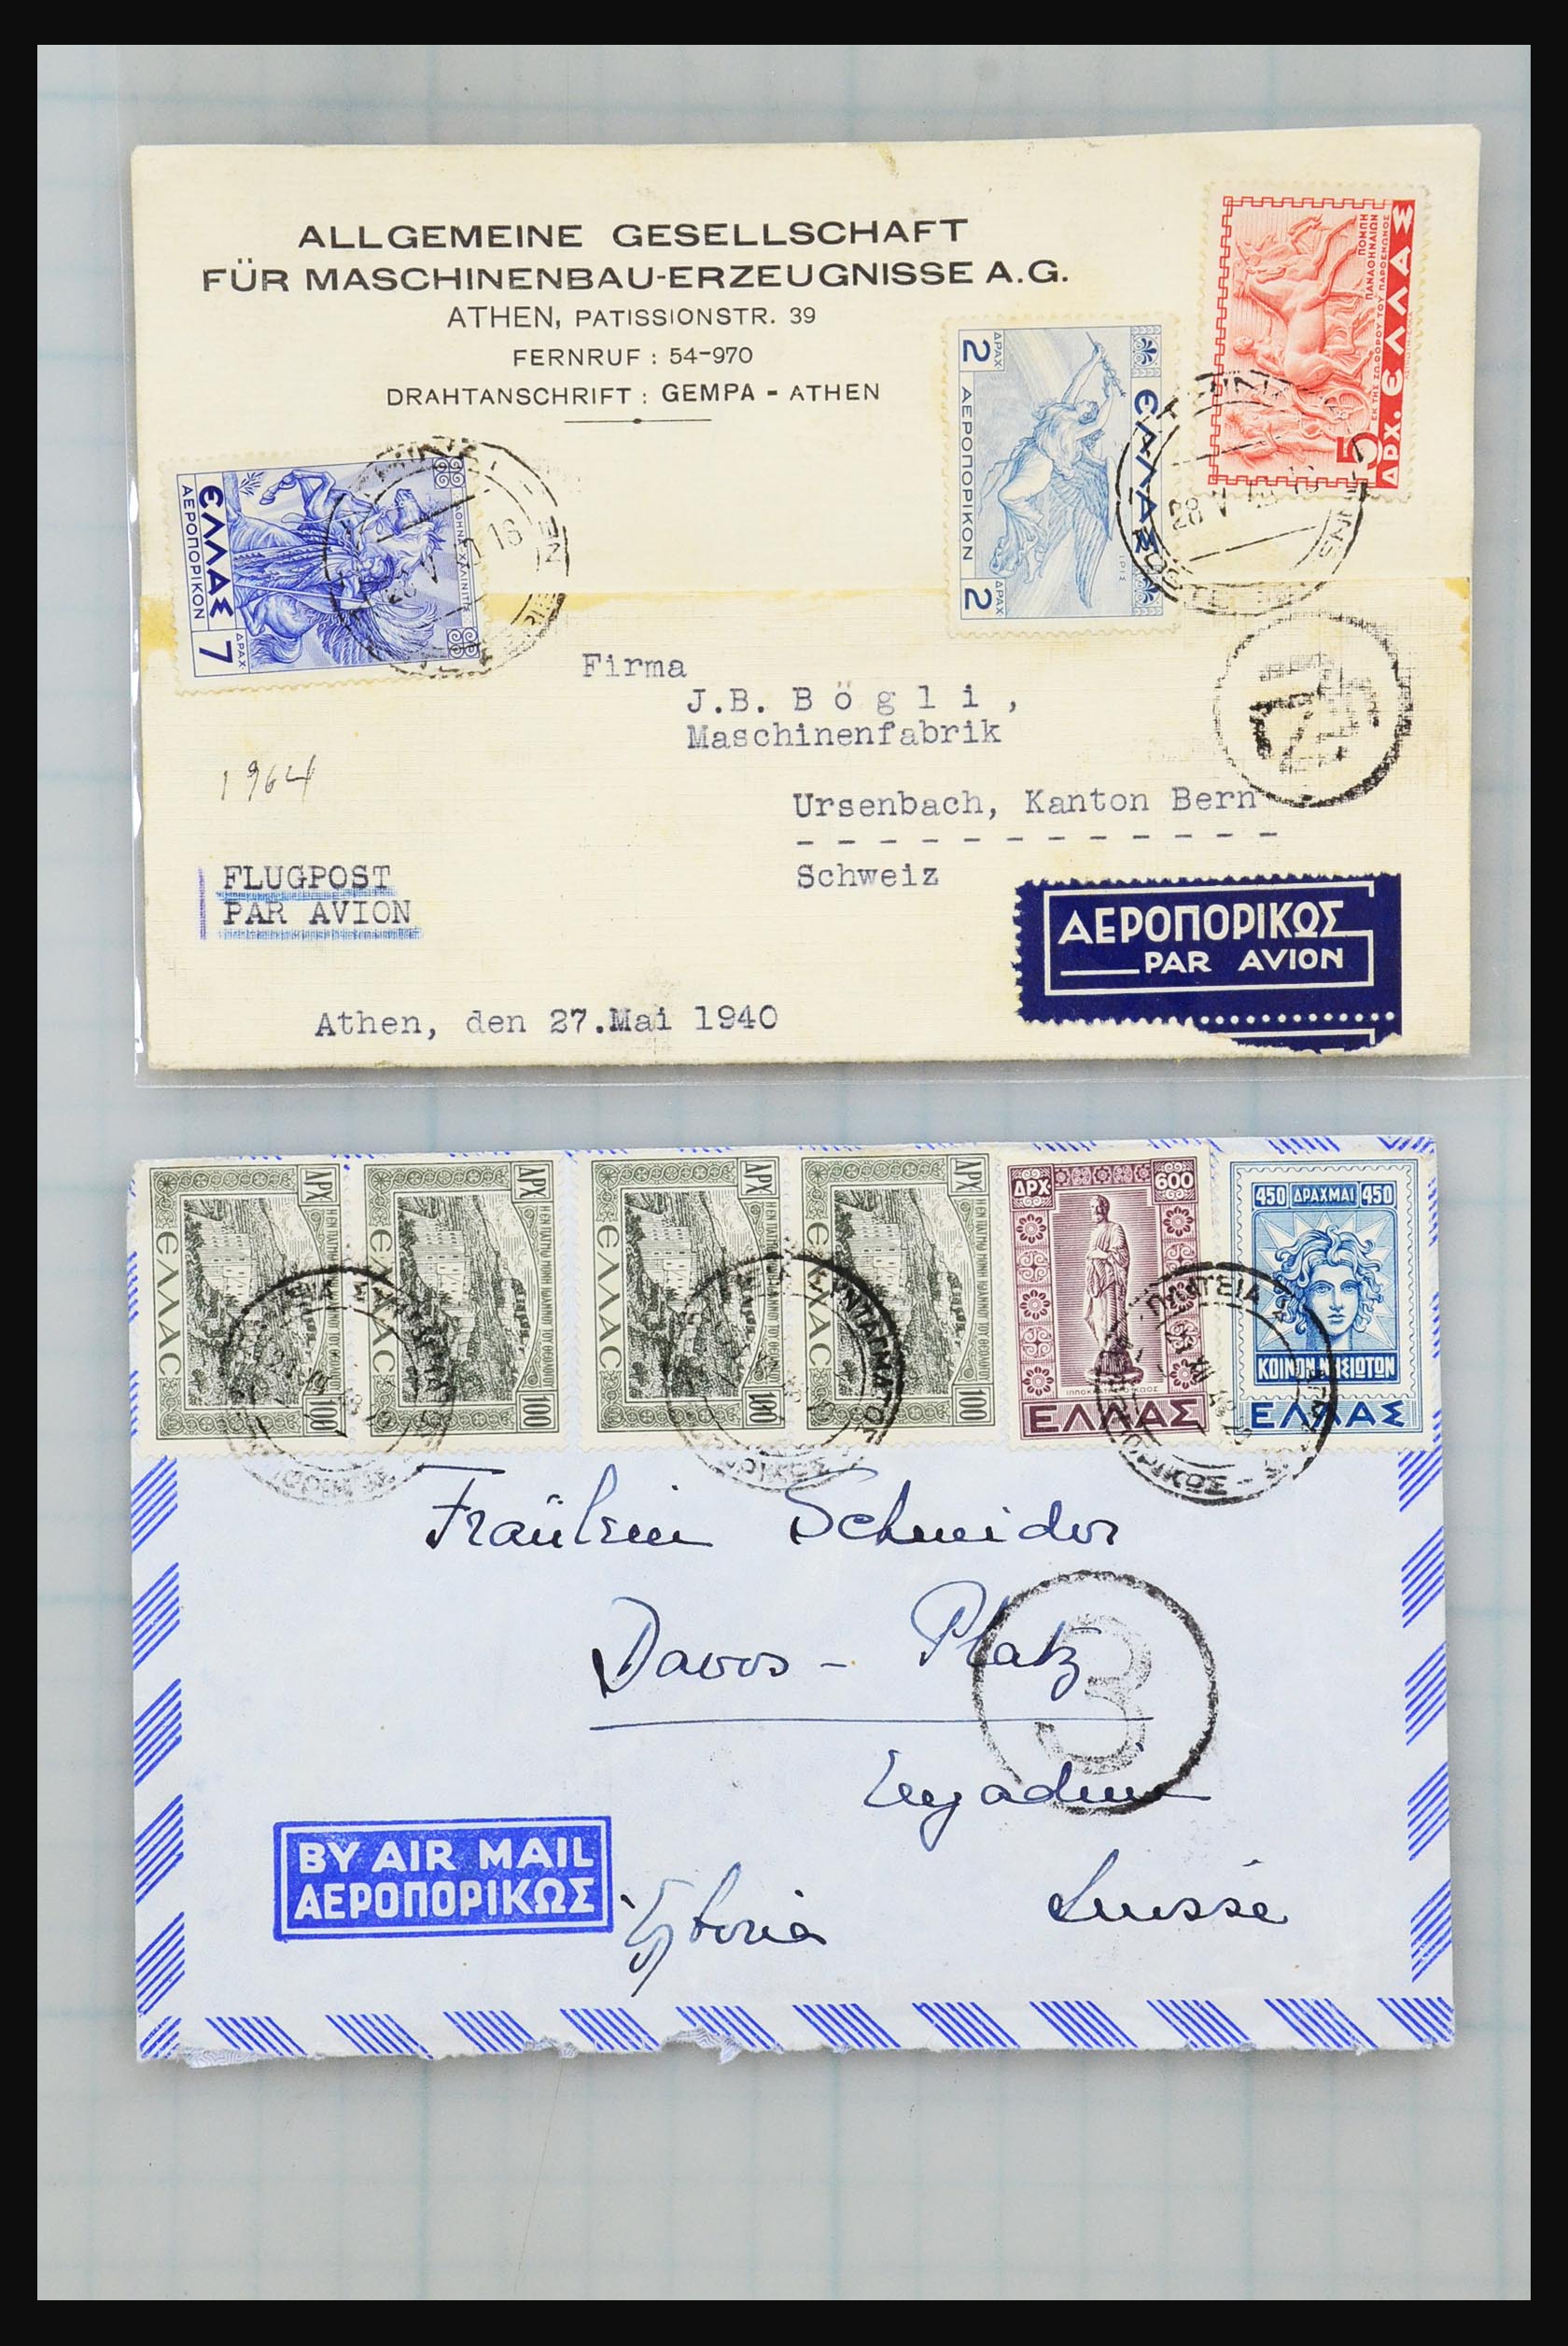 31358 020 - 31358 Portugal/Luxemburg/Griekenland brieven 1880-1960.